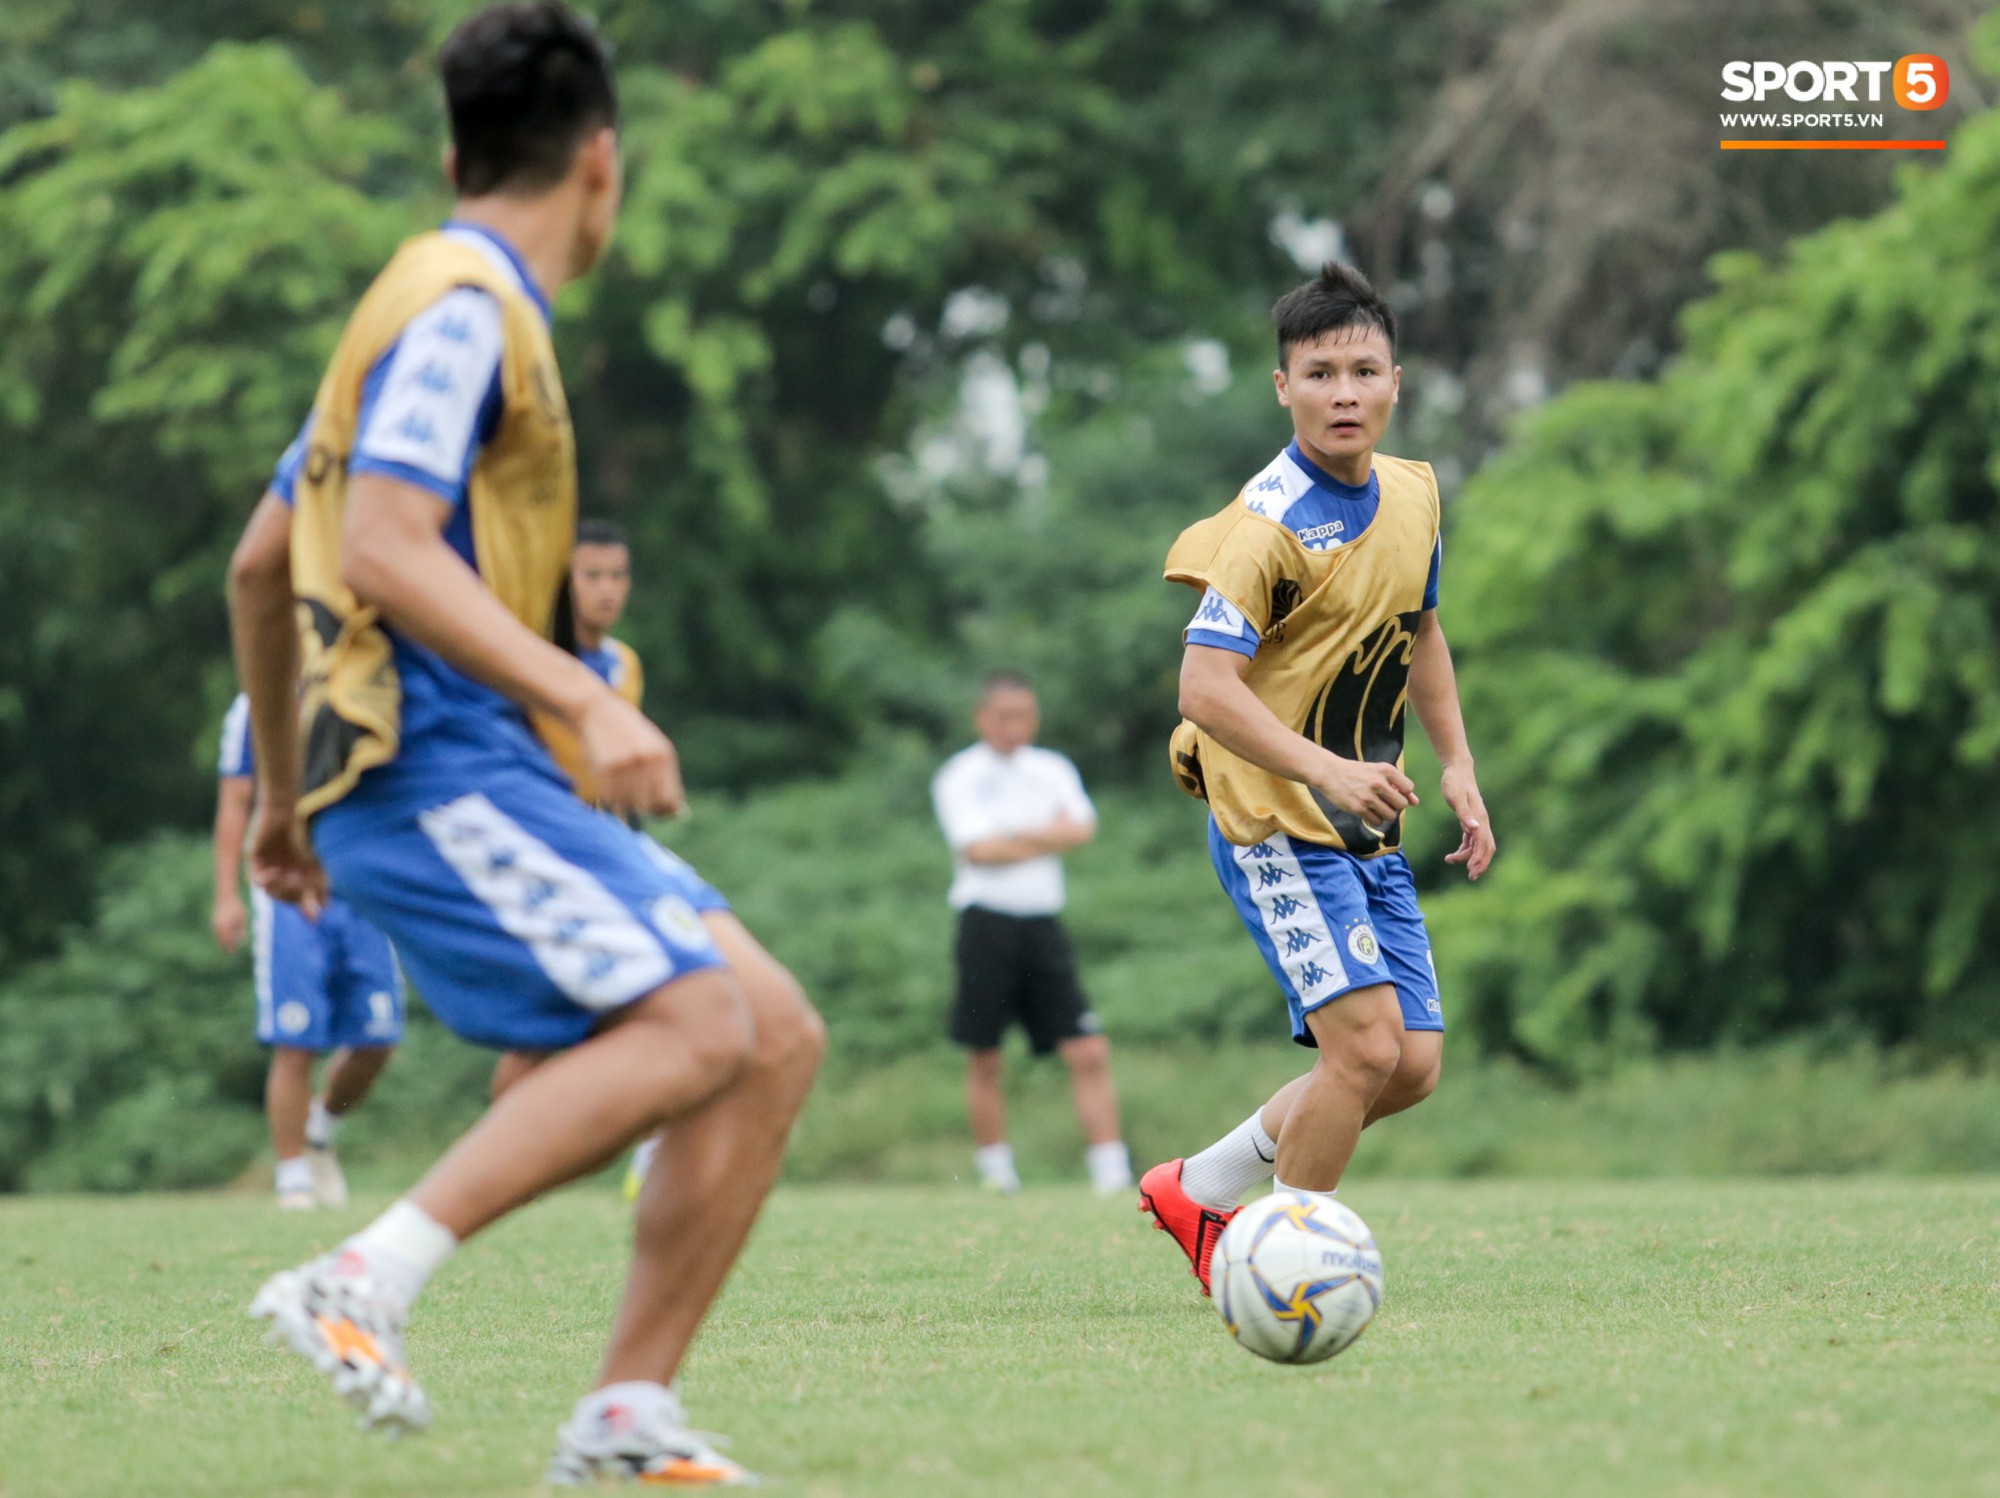 Bùi Tiến Dũng dính đòn, cầu thủ trẻ Hà Nội FC lấy ve sầu trêu đồng đội trước trận bán kết lượt về AFC Cup - Ảnh 8.